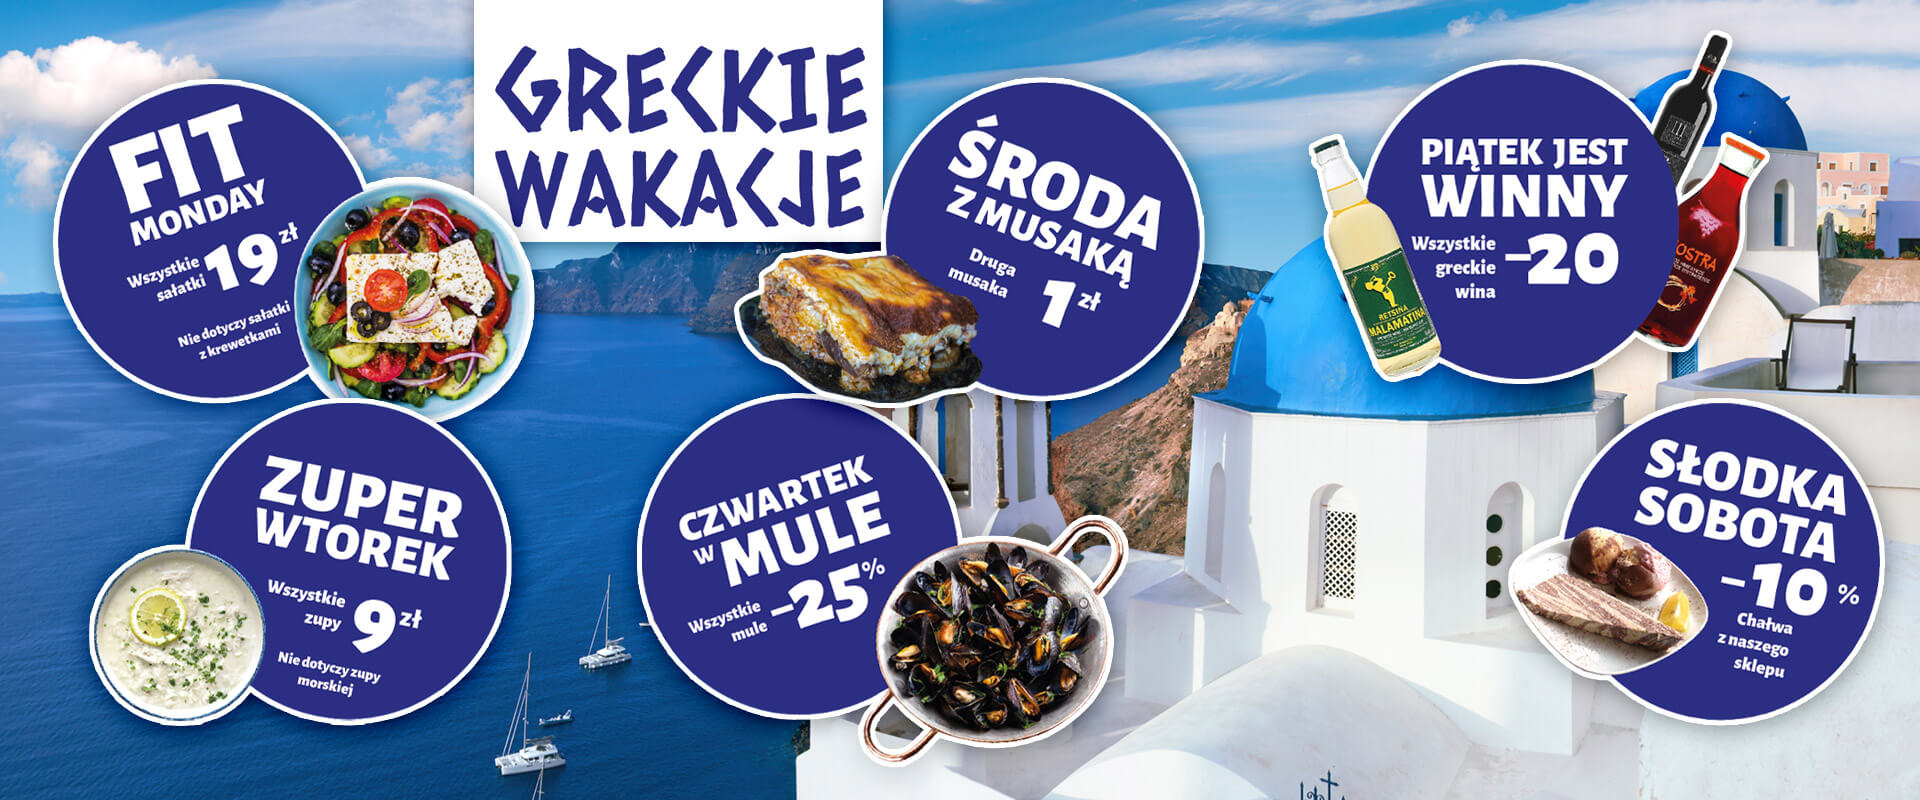 Greckie wakacje u Szalonego Greka